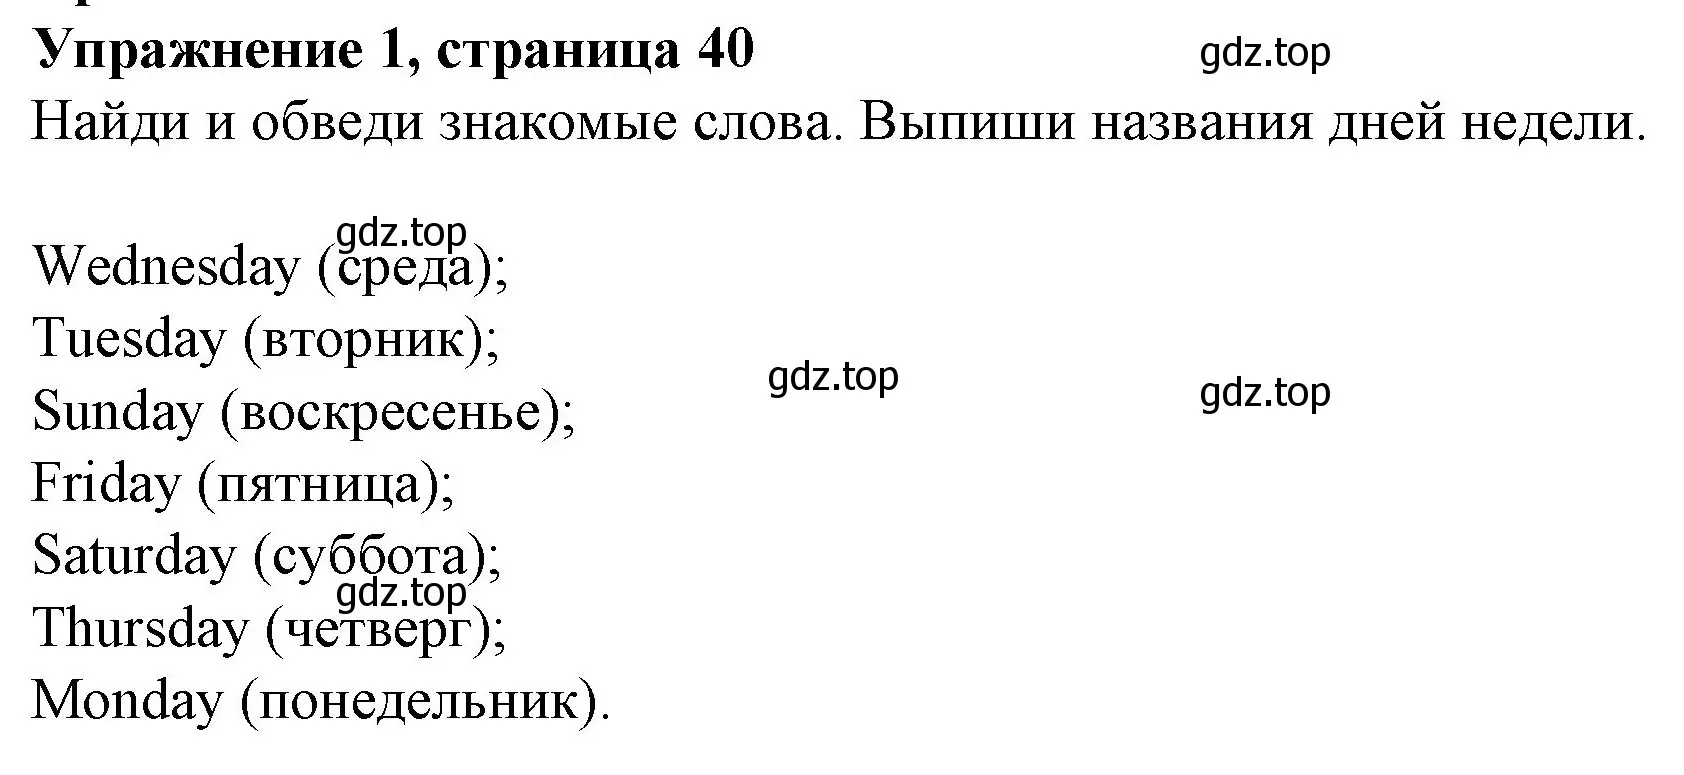 Решение номер 1 (страница 40) гдз по английскому языку 3 класс Биболетова, Денисенко, рабочая тетрадь